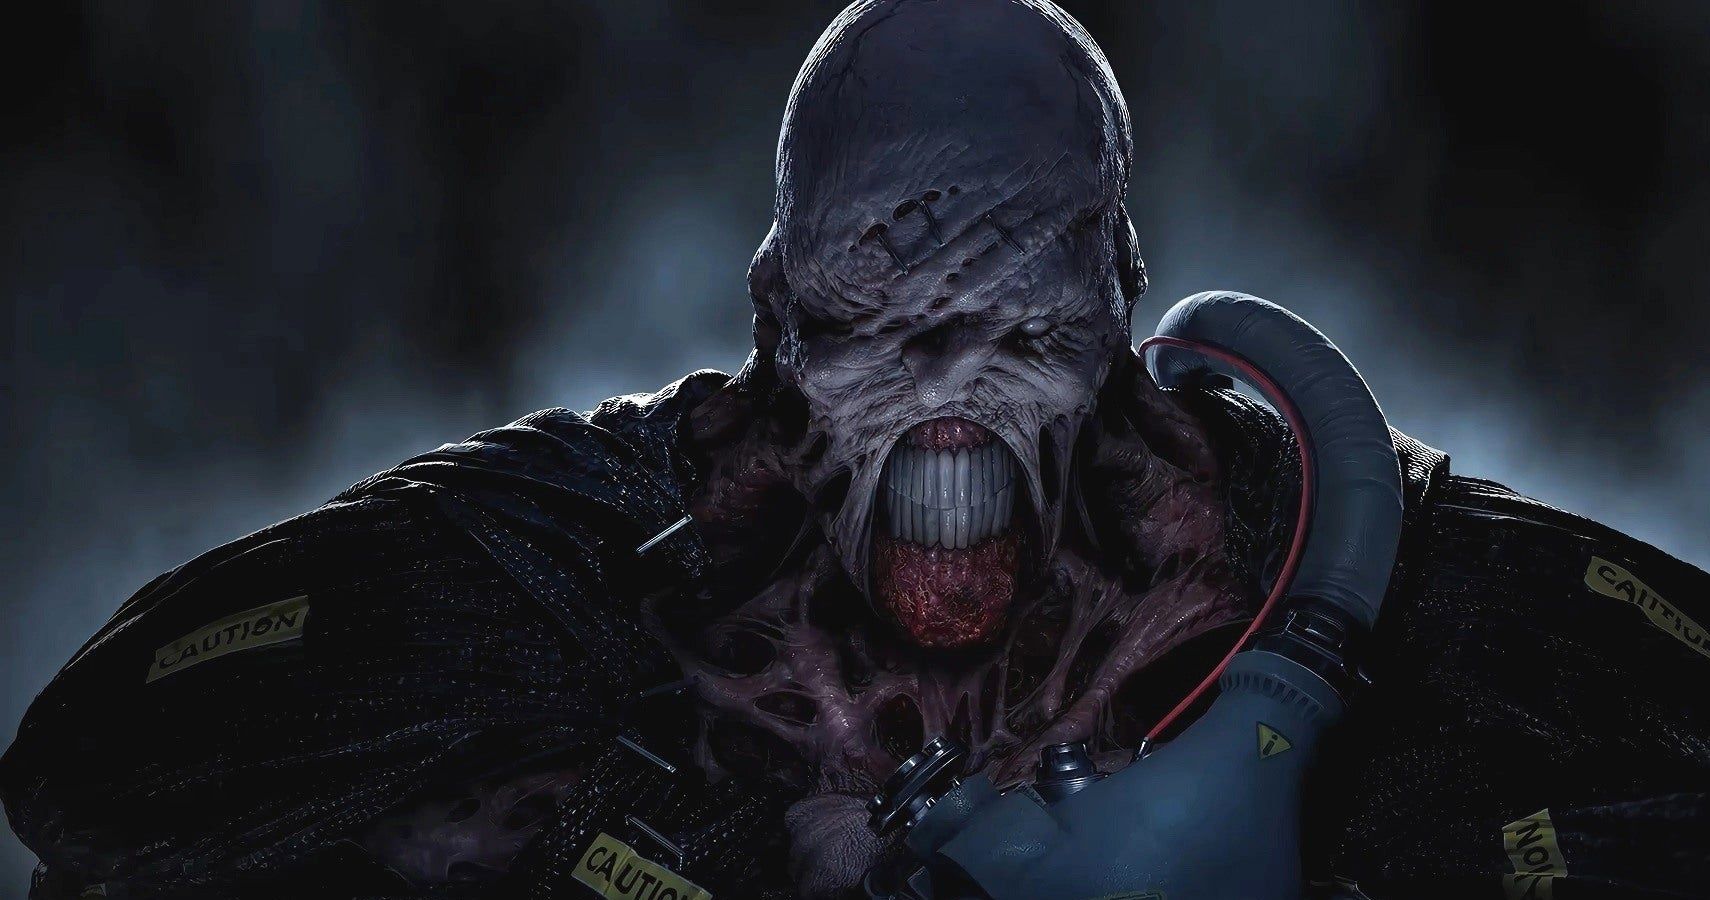 Resident Evil 3 Remake: Nemesis (review) and Resident Evil 4 rumors